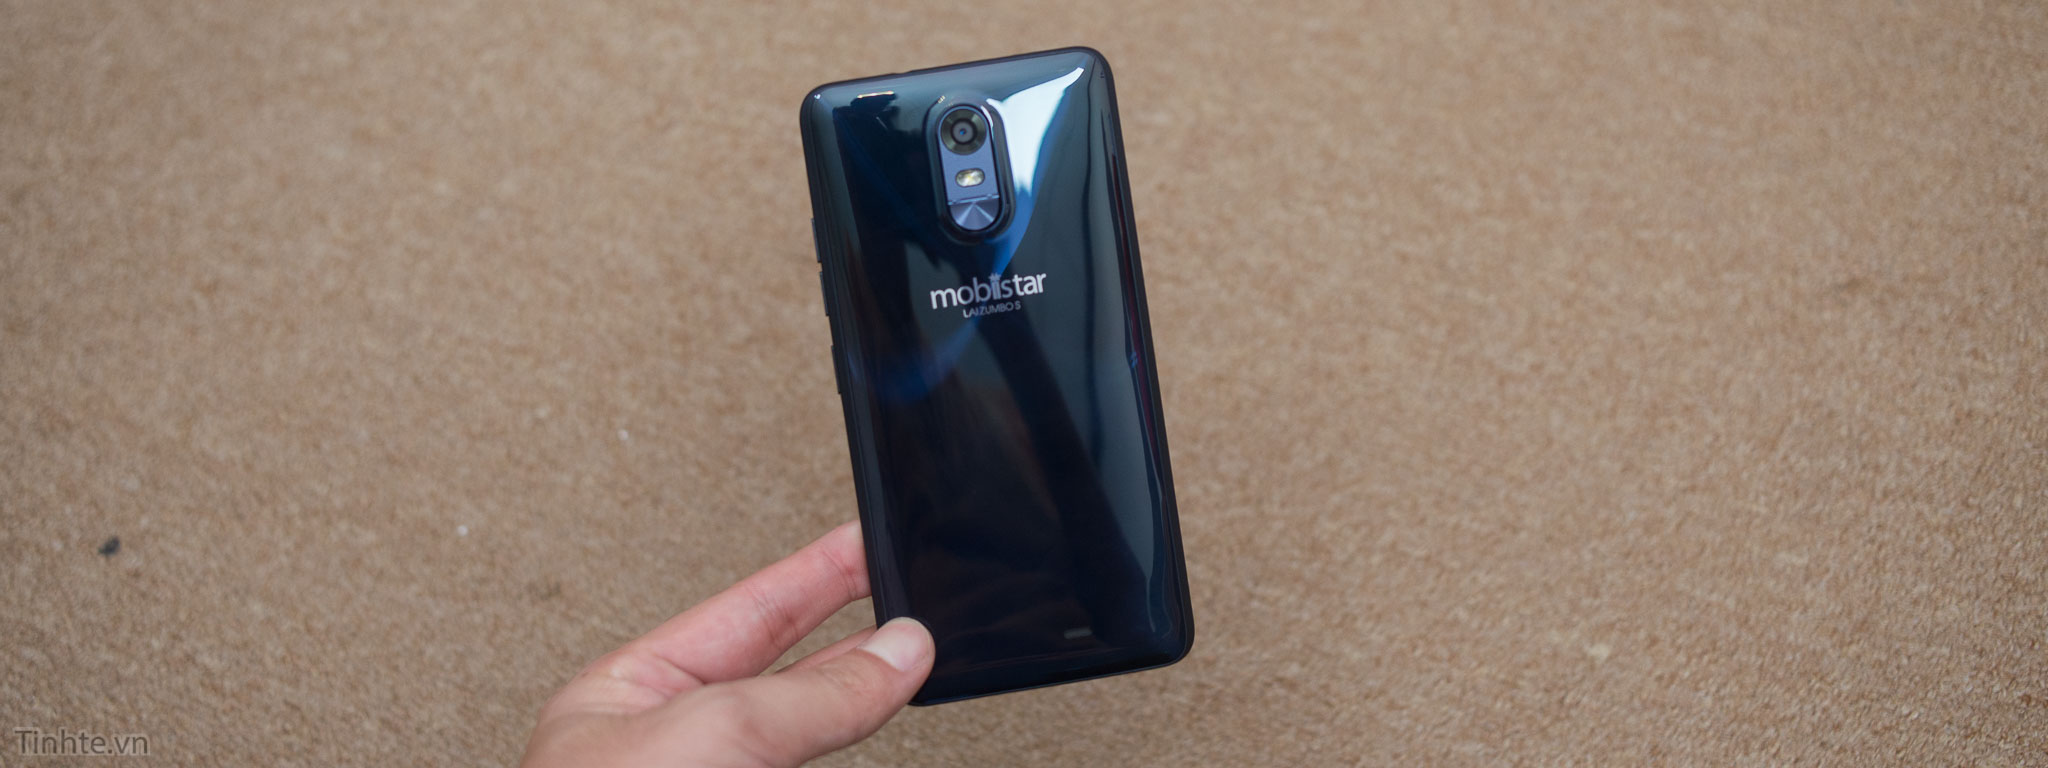 Video trên tay và tặng Mobiistar Lai Zumbo S: nắp lưng độc đáo, Android 6, 5.5” 720p giá 3.2 triệu